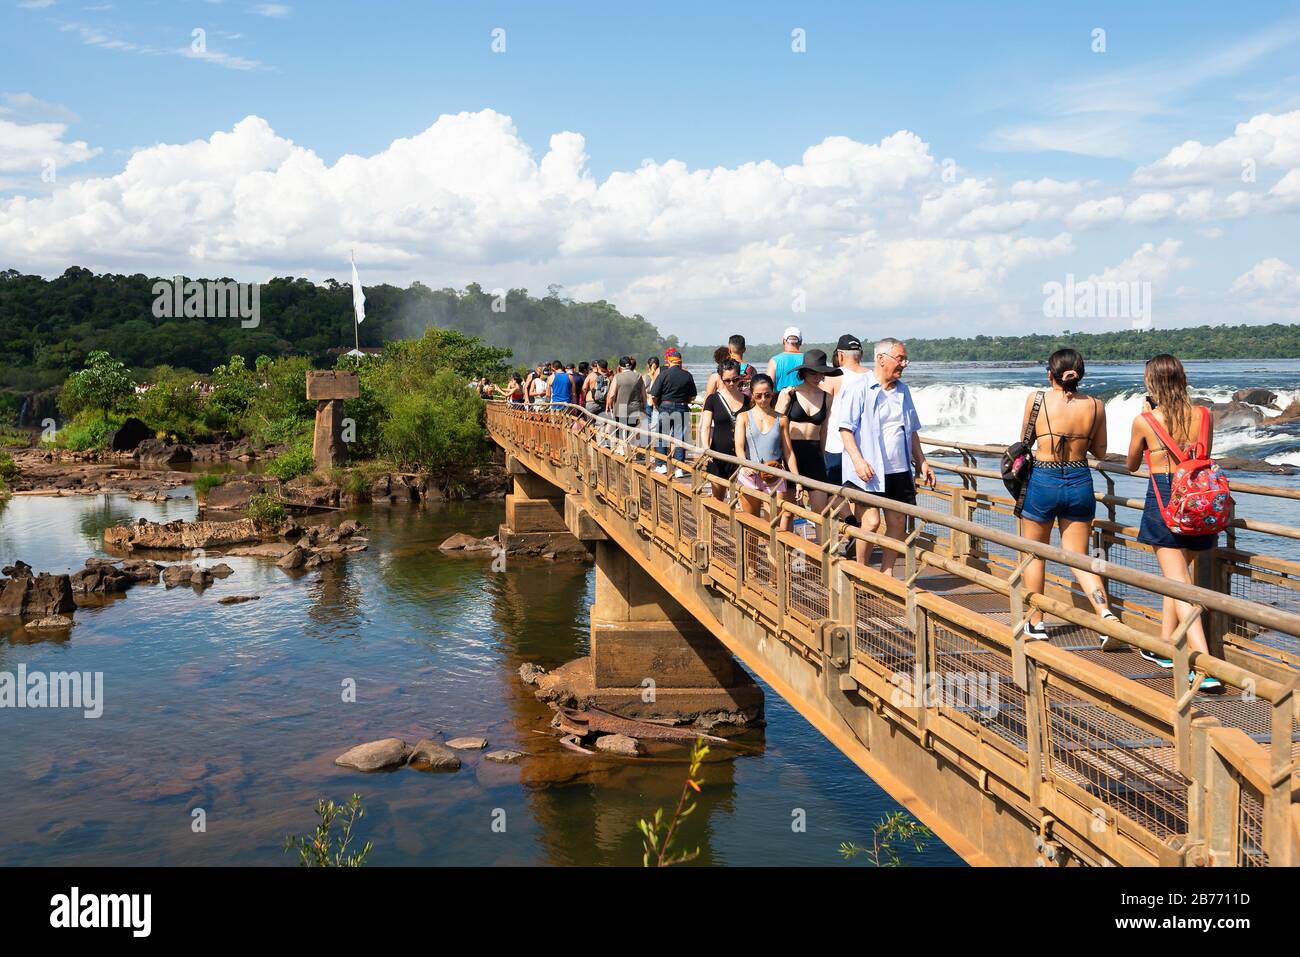 Geschäftige Spazierwege mit Touristen als Folge der Karnevalsferien in Foz do Iguaçu Brasilien und Argentinien. Holzbrücke über Wasser im Iguazu-Nationalpark. Stockfoto